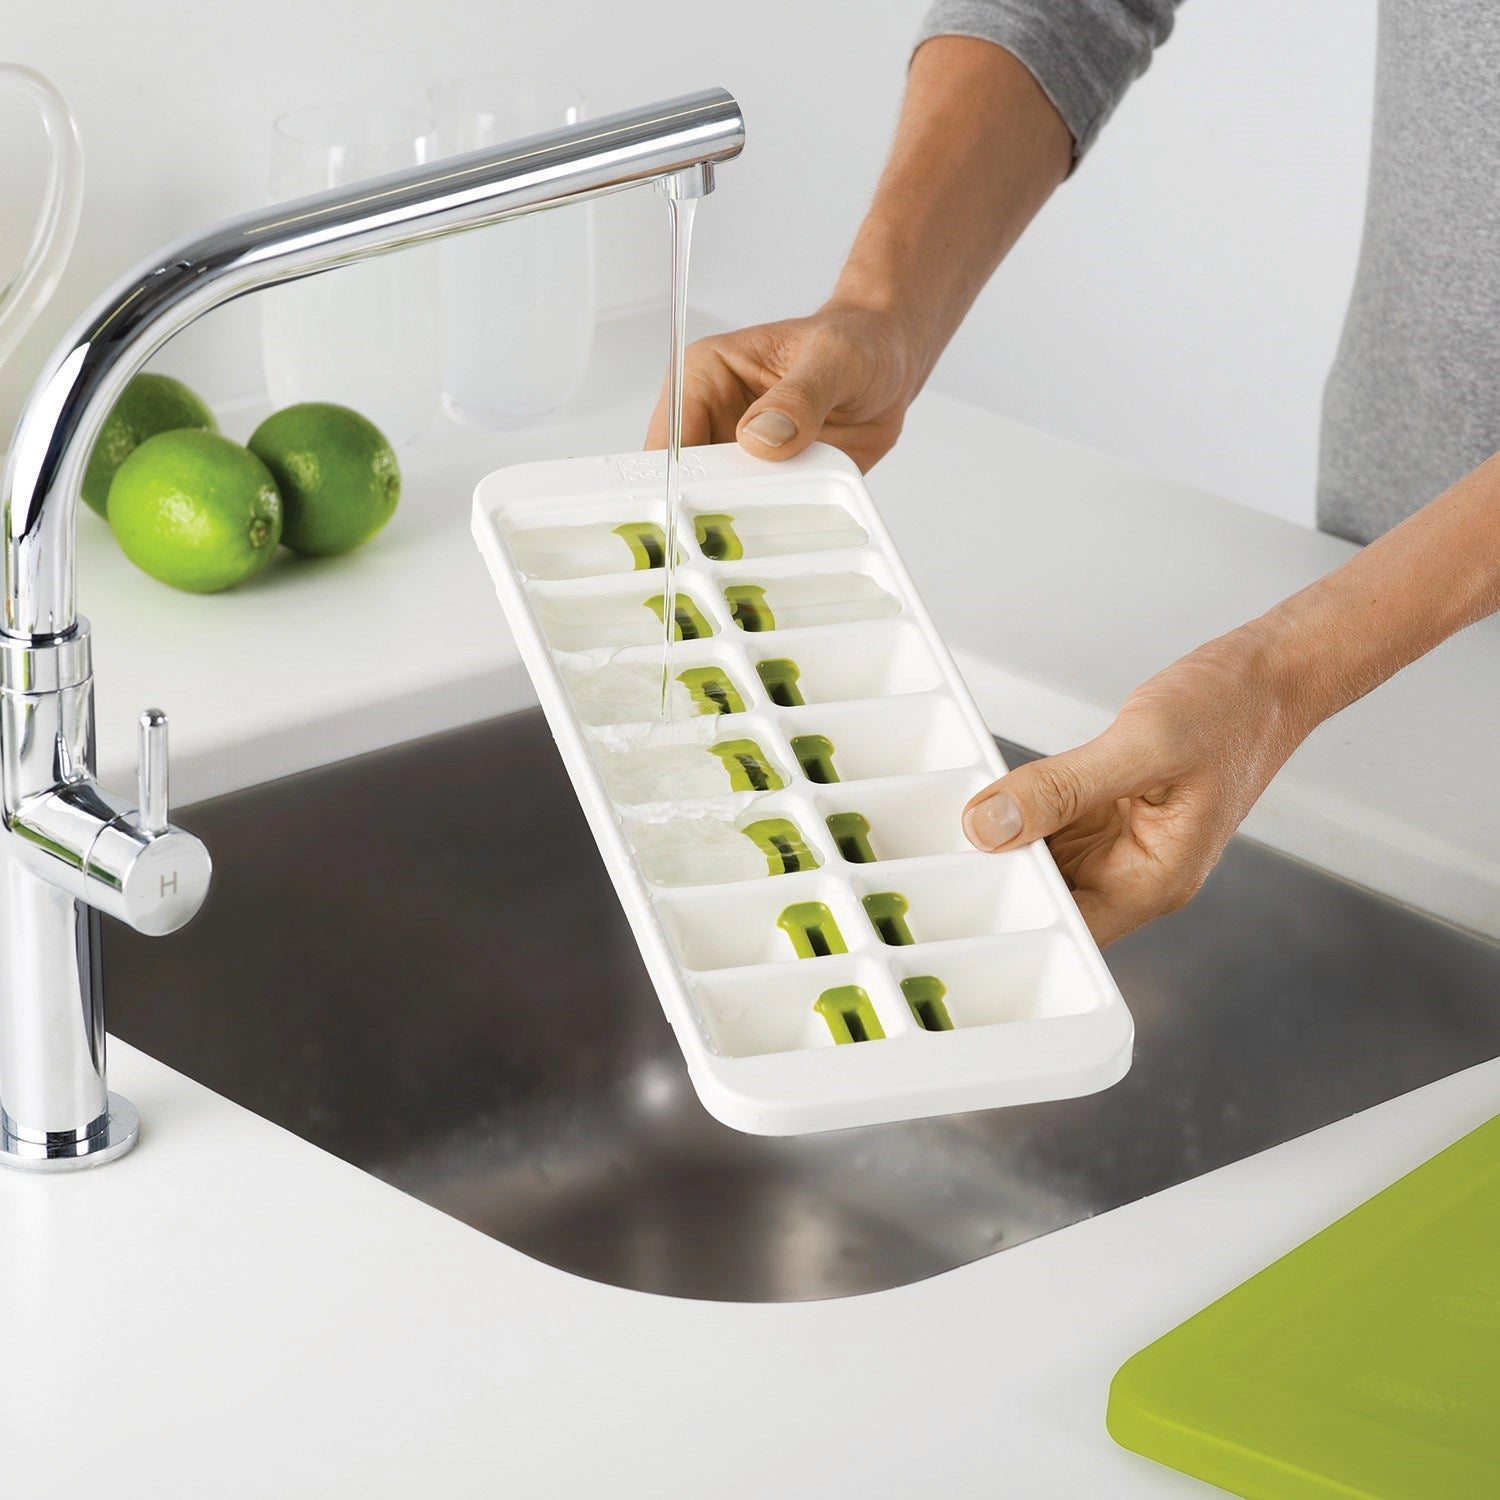 Quicksnap Plus Eiswürfelbehälter, weiss grün, 13x32.2x3.5 cm - KAQTU Design